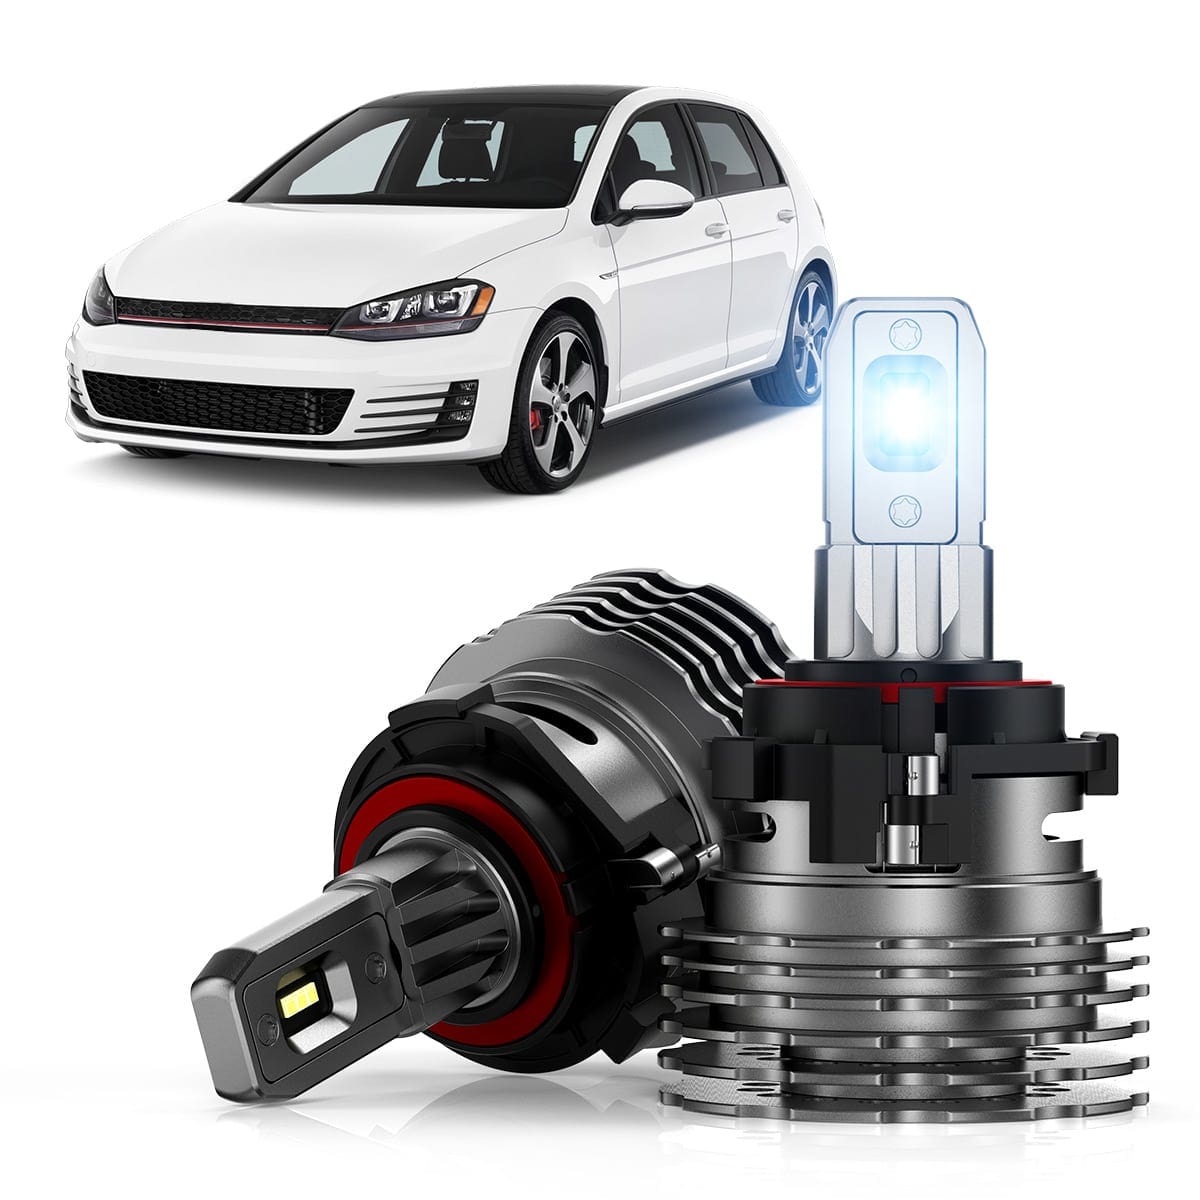 H7 4 Sides Car LED Headlight KIT Bulbs For VW Jetta 2005-2017 Passat 1998-2017 